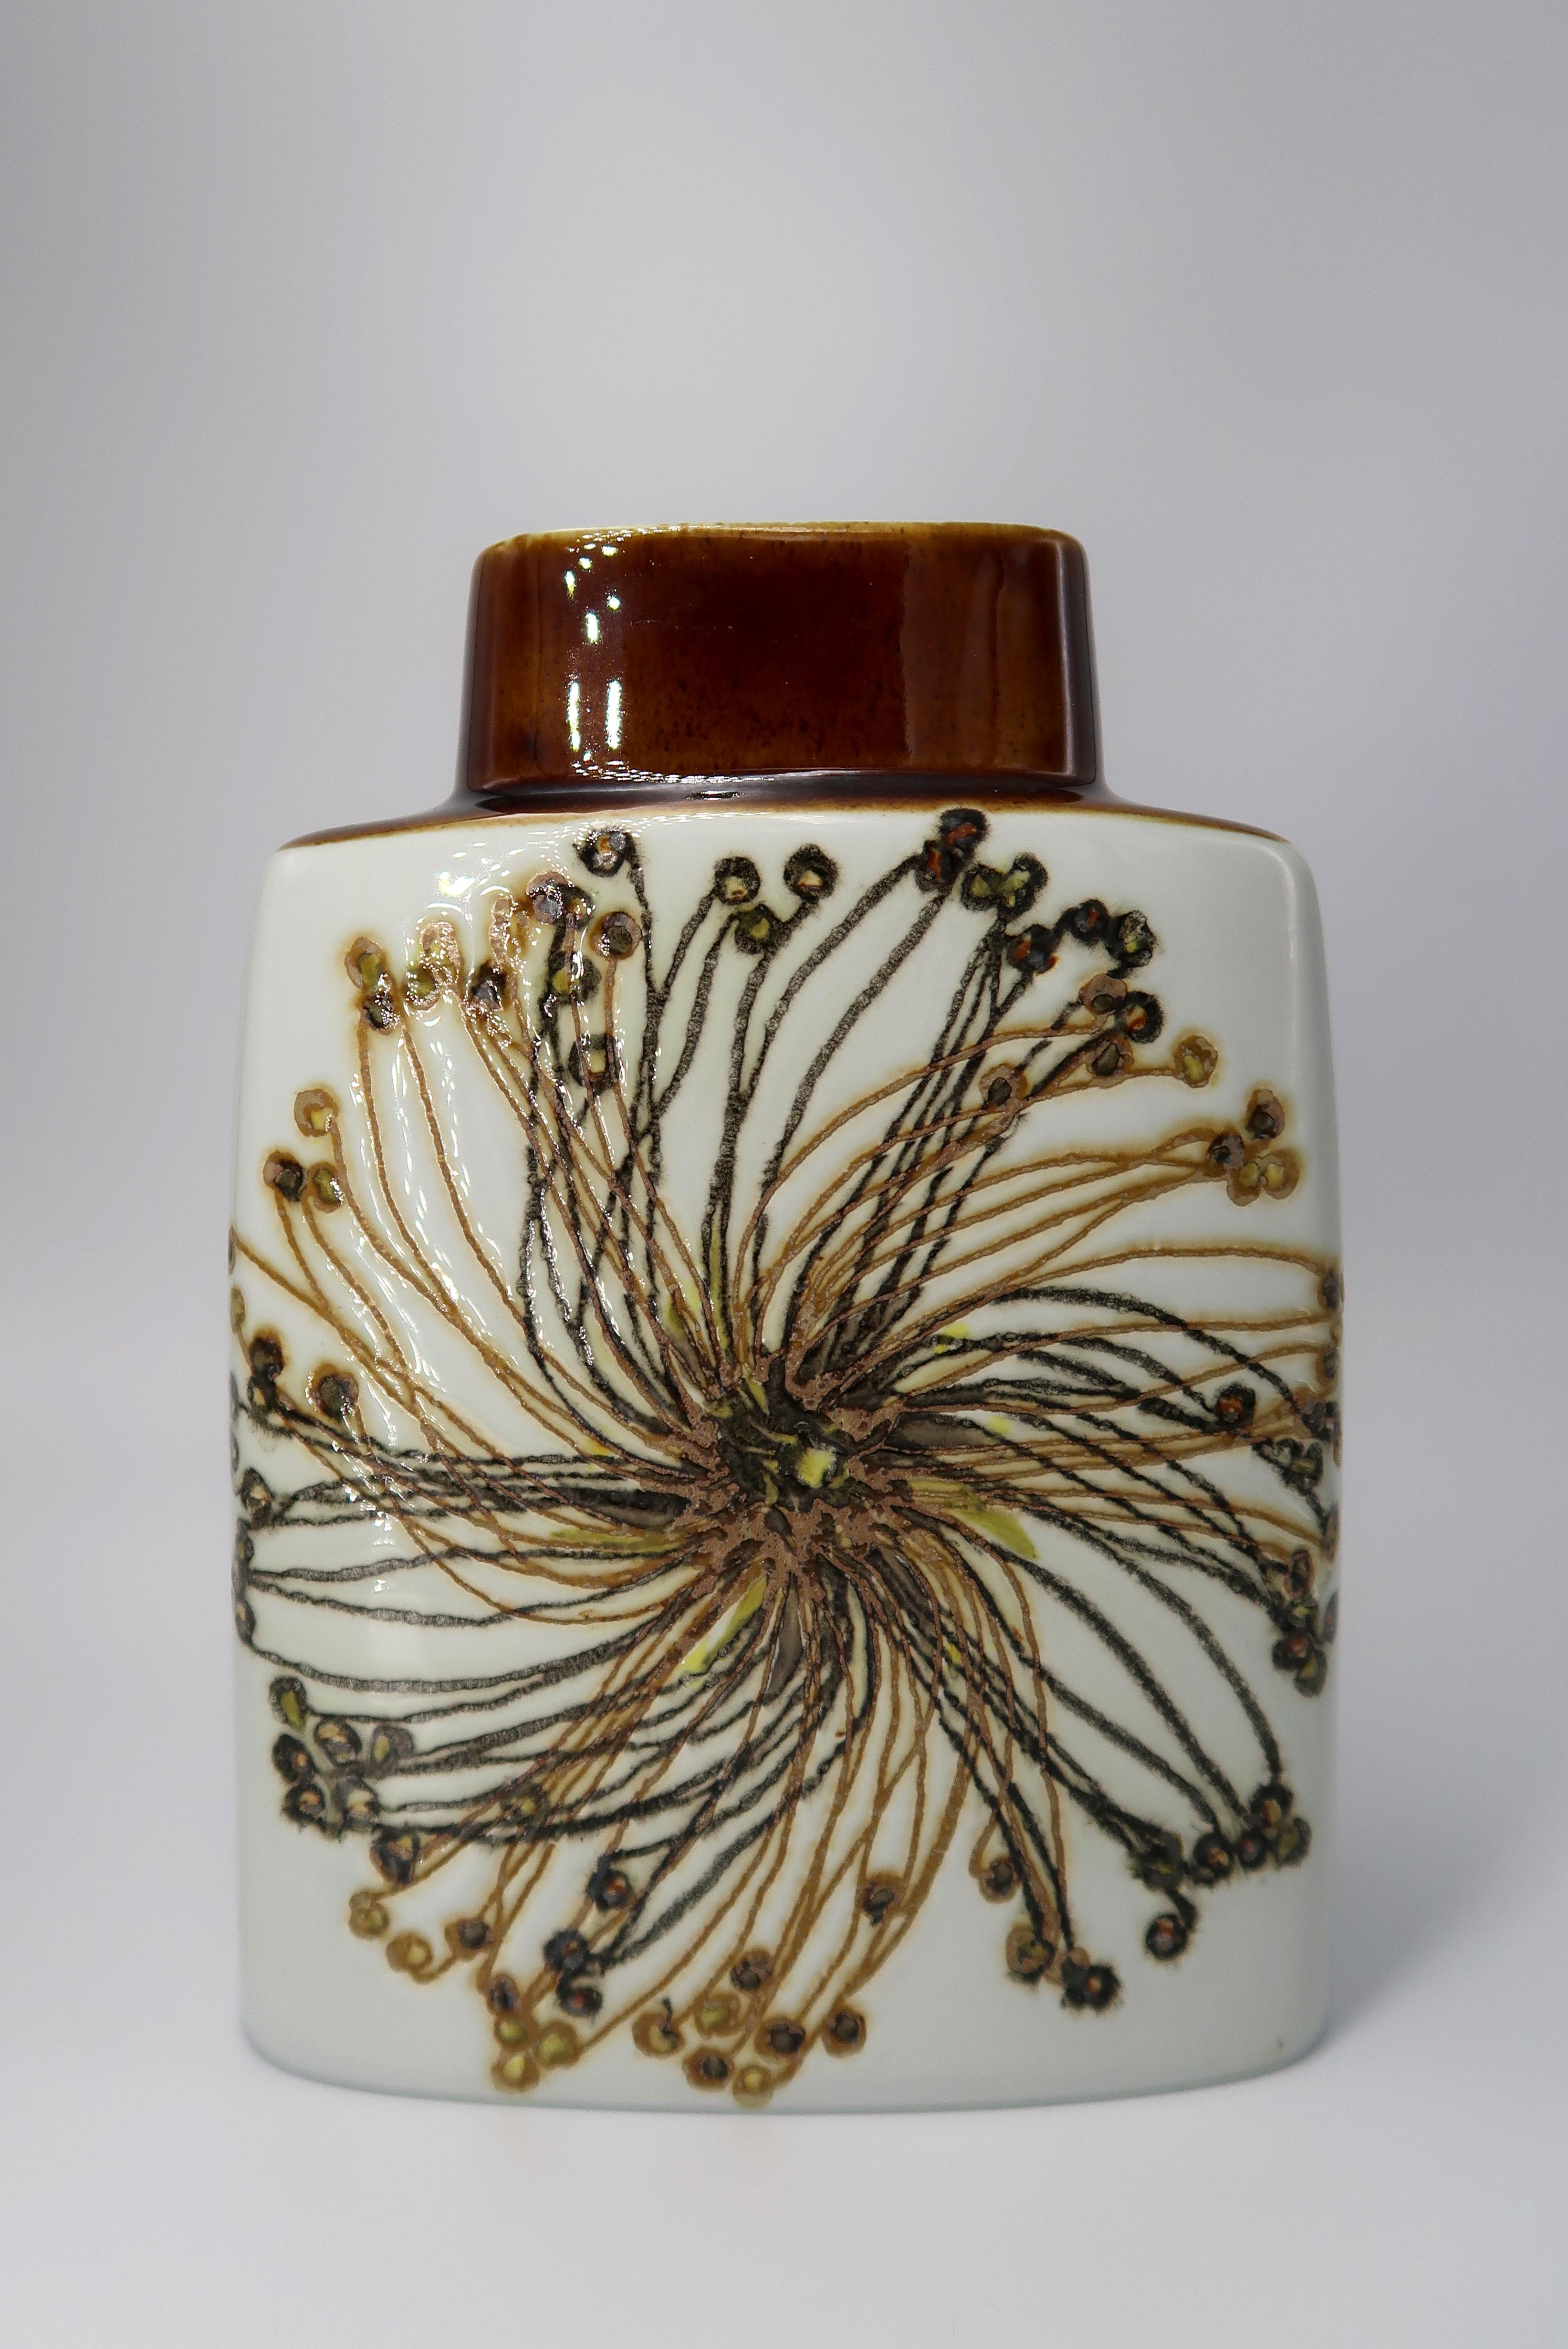 Klassische und atemberaubende Royal Copenhagen dänische Fayence-Vase aus der Mitte des Jahrhunderts mit einem komplizierten organischen, pflanzenartigen Muster. Dekorentwurf von der Künstlerin Ellen Malmer (1942-), Formenentwurf von dem Designer